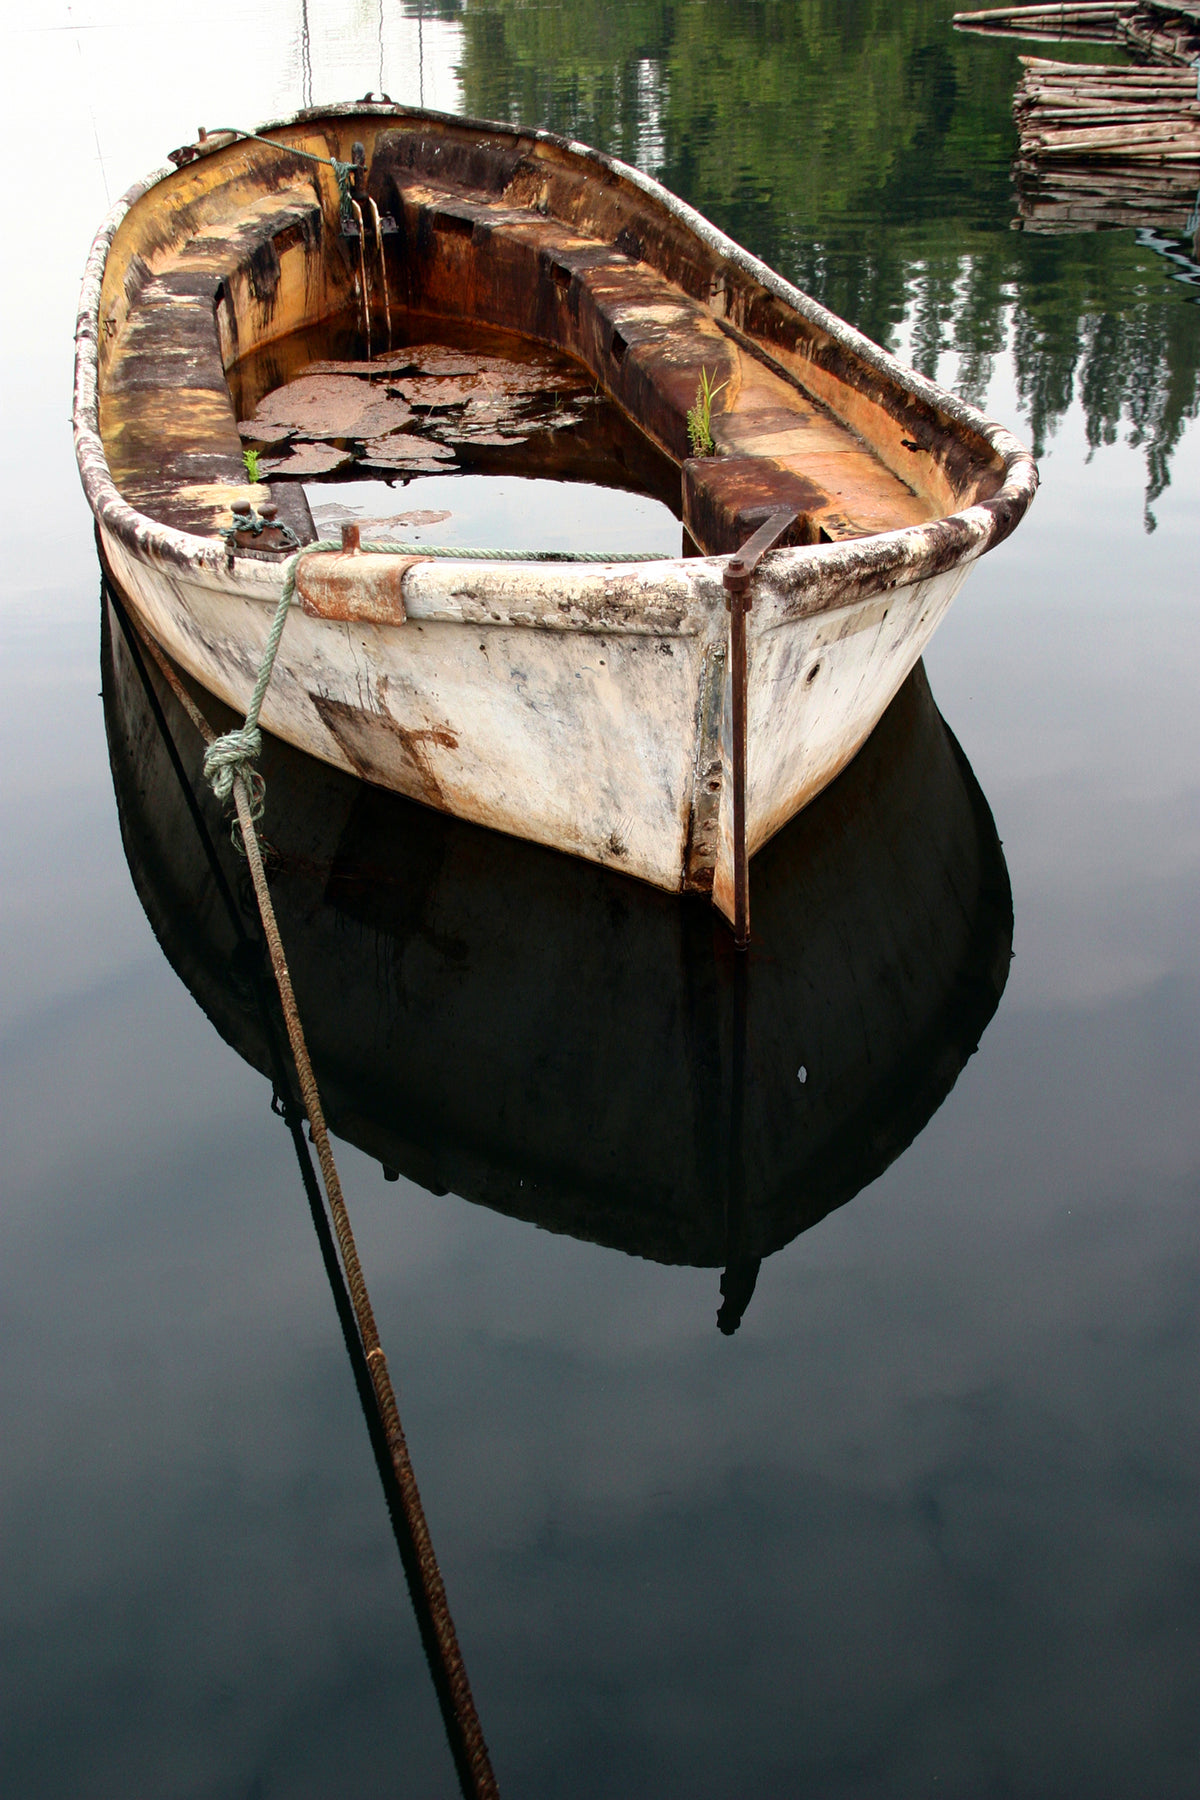 锈迹斑斑的河船在清澈的水面上行驶